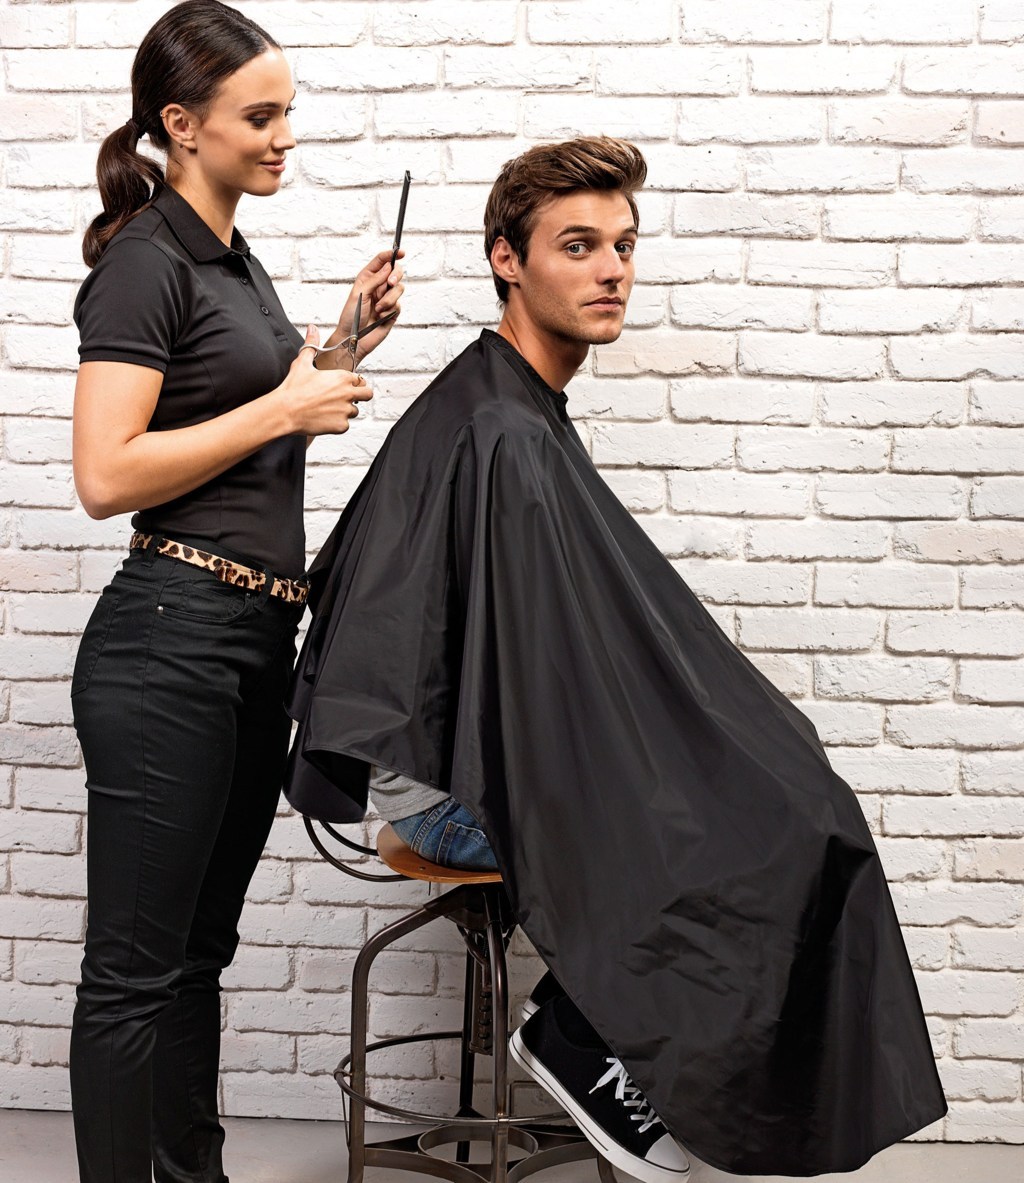 Tablier pour coiffeur et barbier en tissu imperméable.